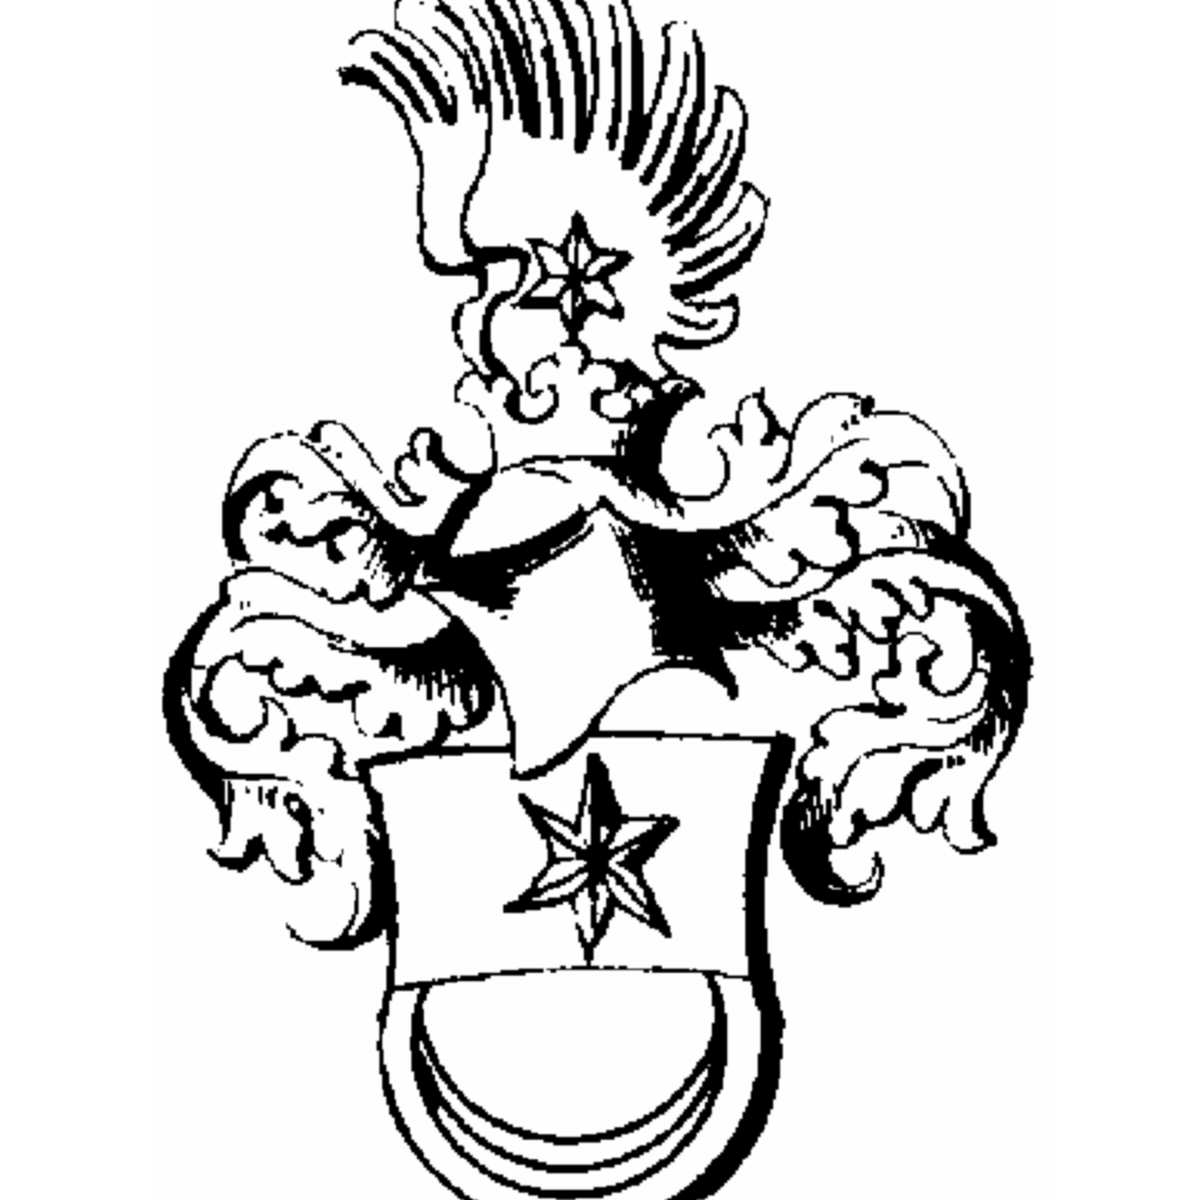 Wappen der Familie Crane